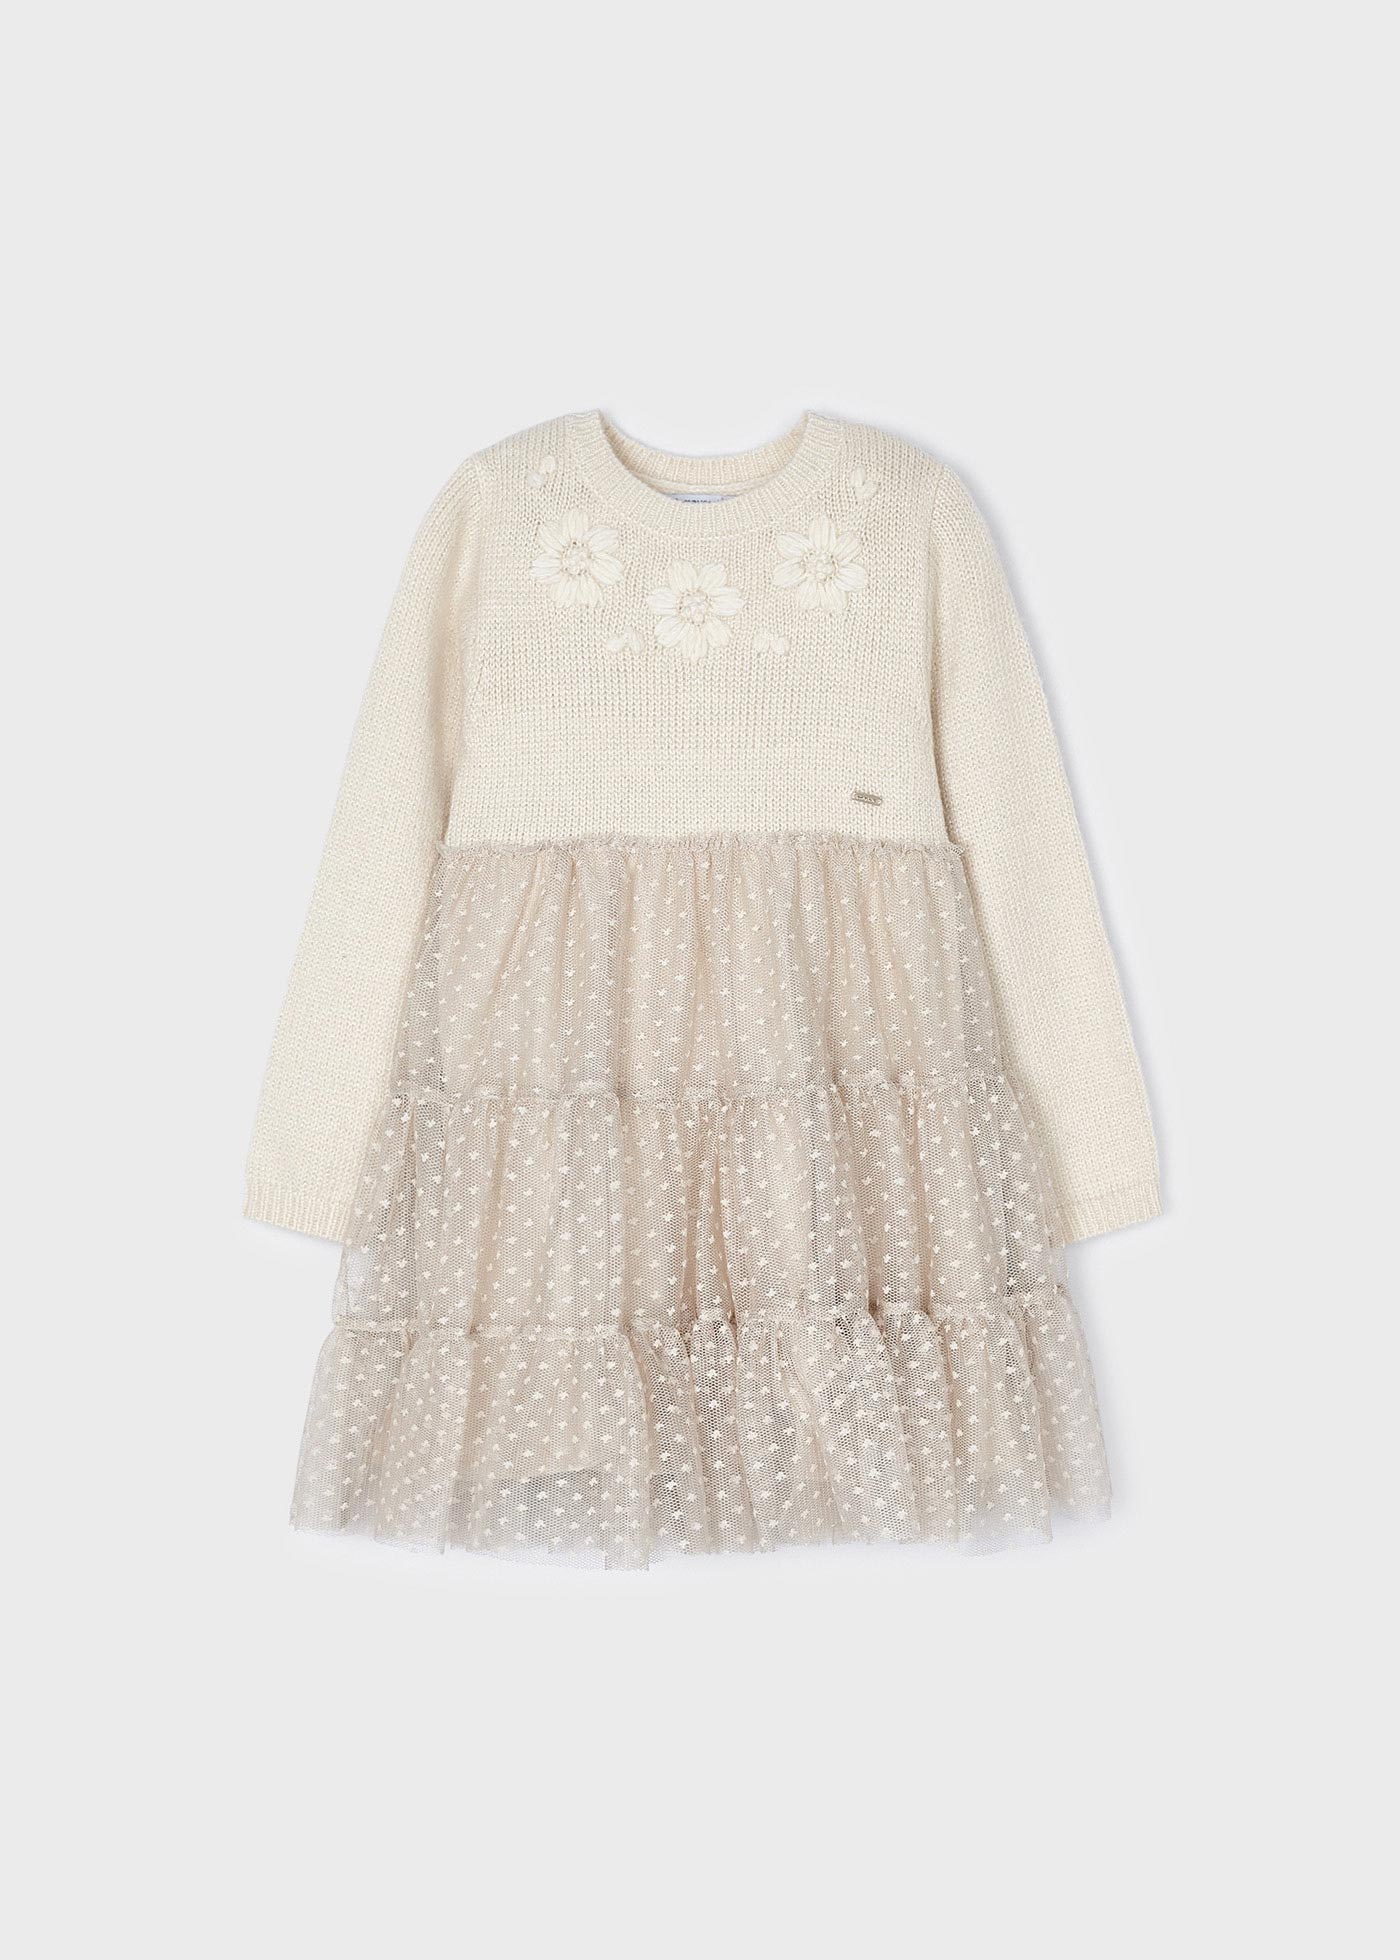 applique girl ® knit floral Tulle | Mayoral dress